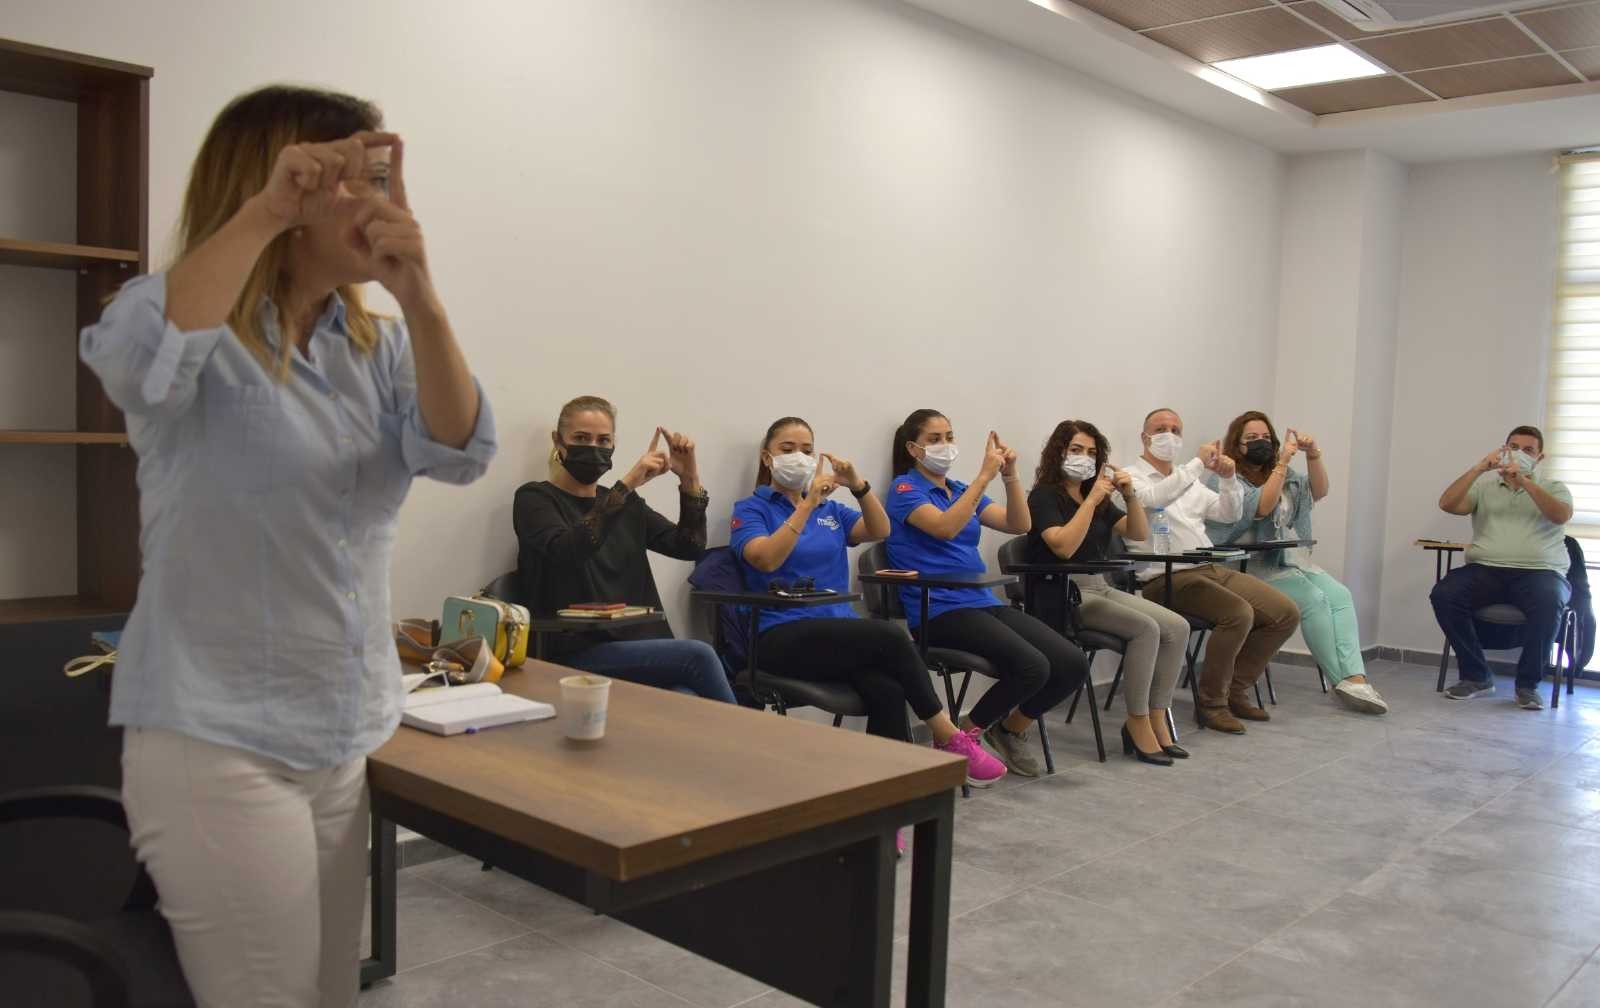 Aliağa Belediyesi işaret dili kursları başladı #izmir